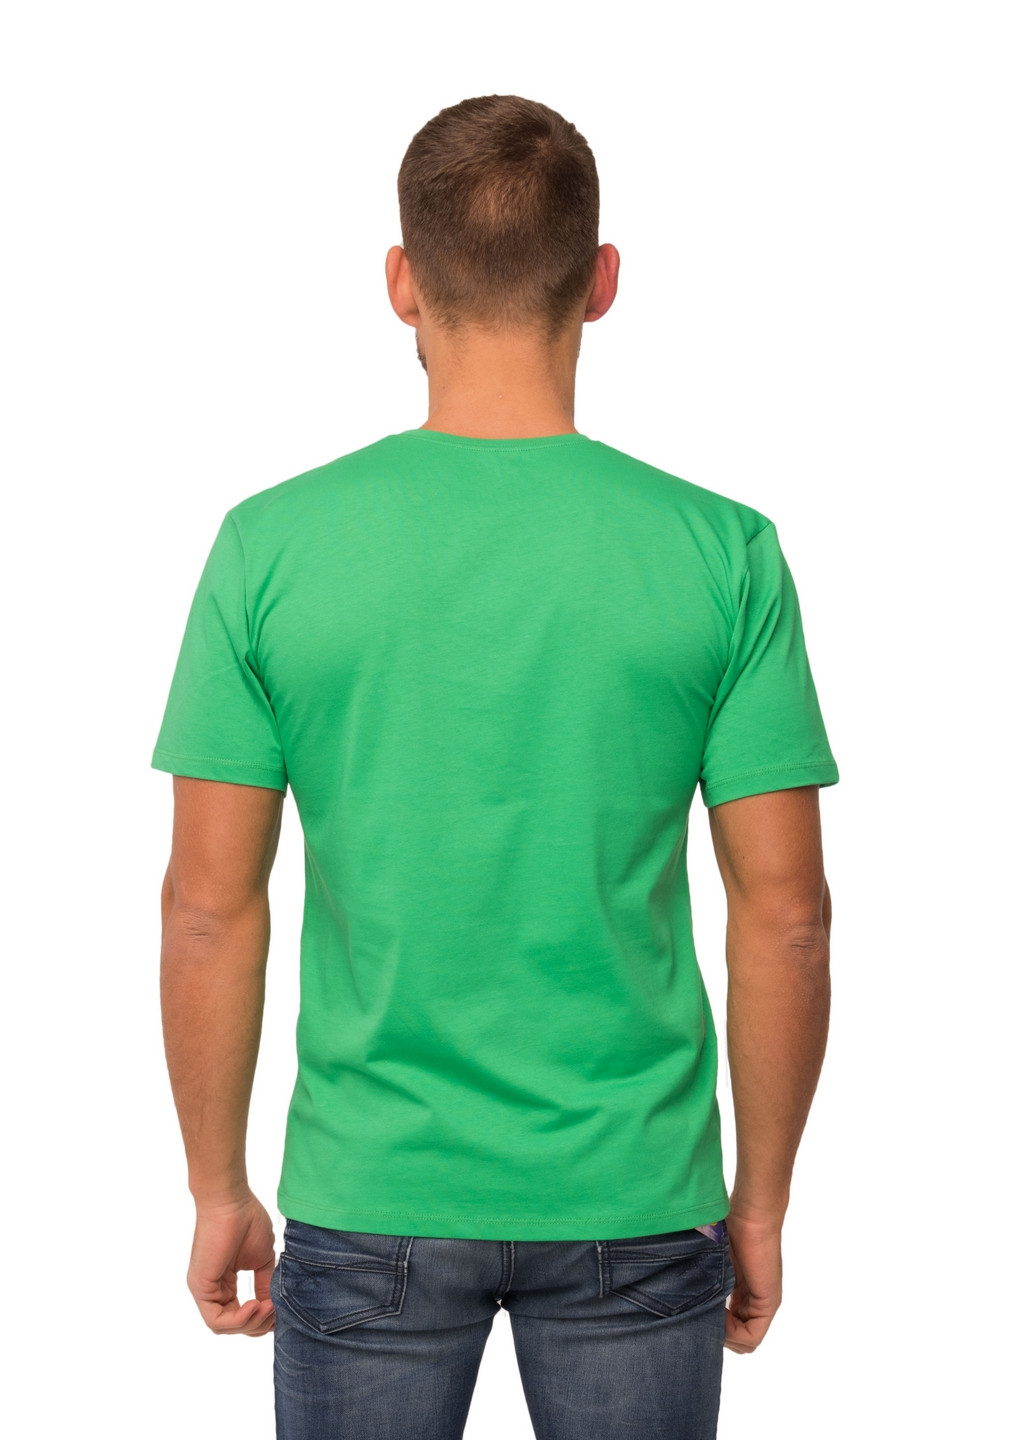 Зеленая футболка мужская Наталюкс 12-1343